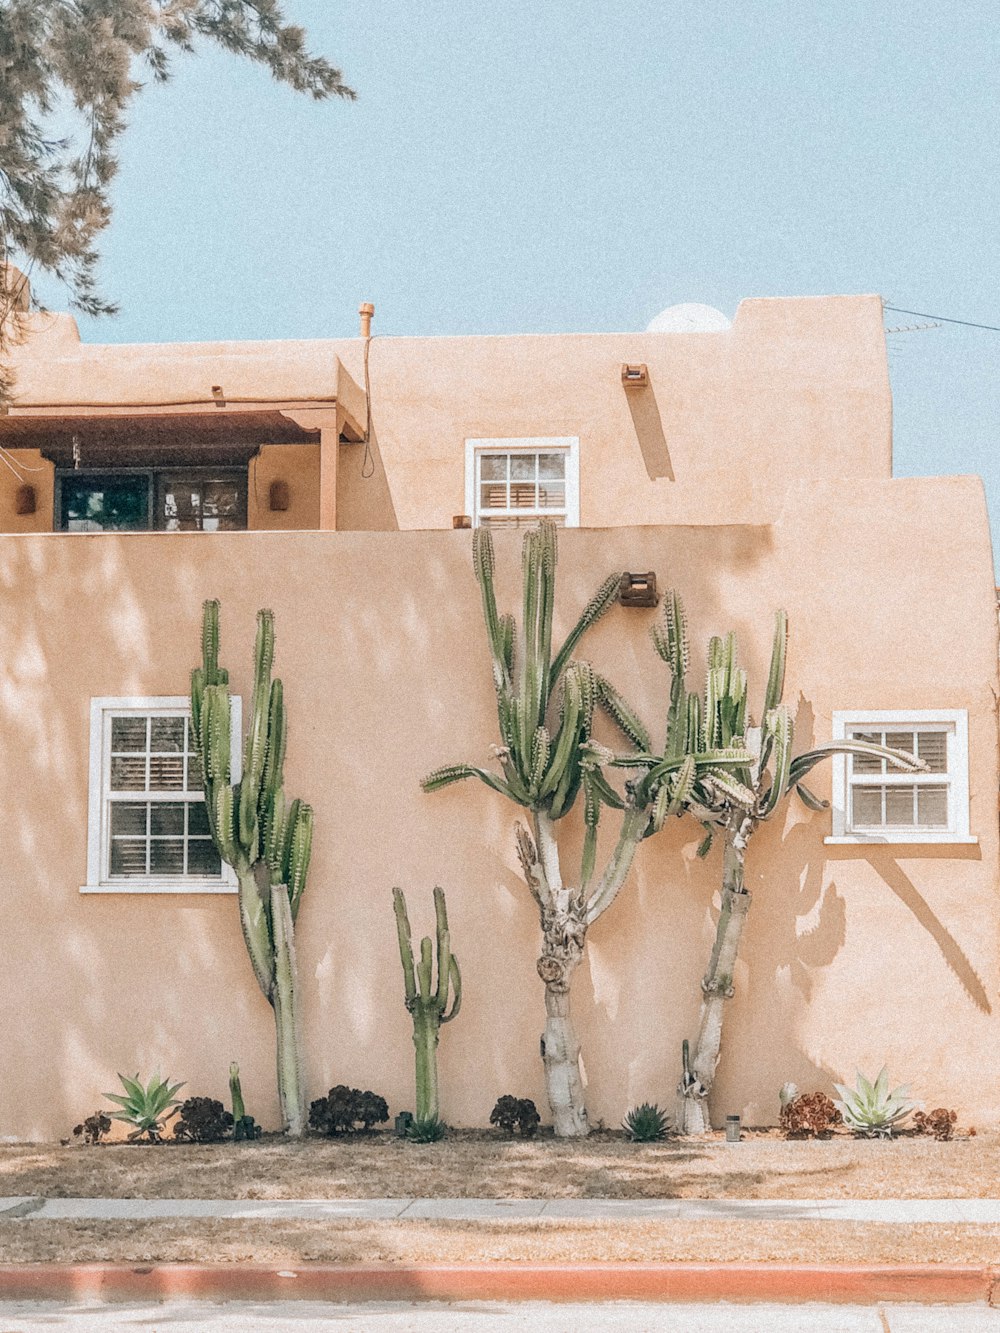 Una casa con un jardín de cactus frente a ella